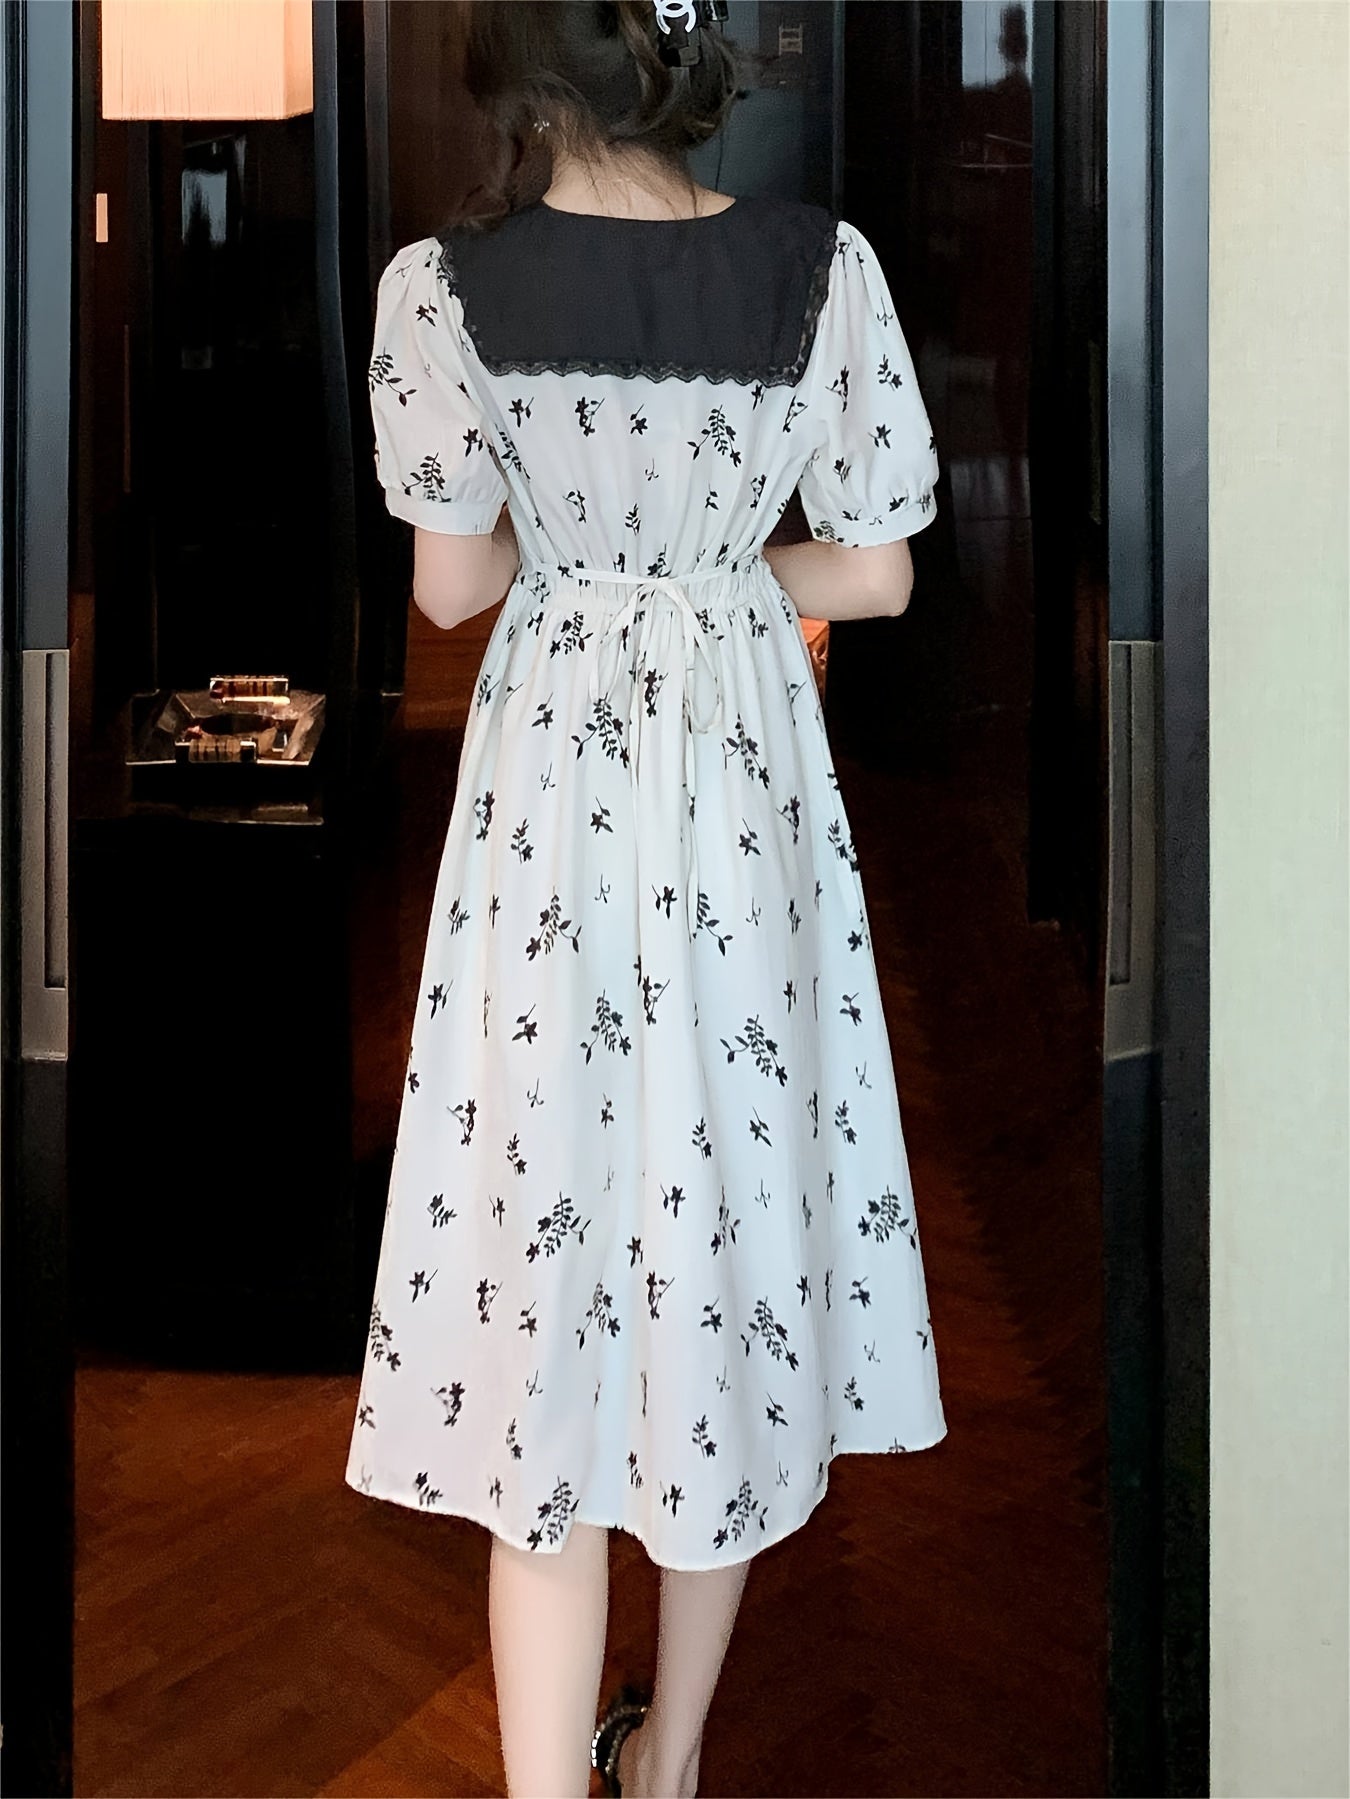 Vzyzv Floral Print Doll Collar Dress, Elegant Short Sleeve Waist Slimming Skinny Dress For Summer, Women's Clothing